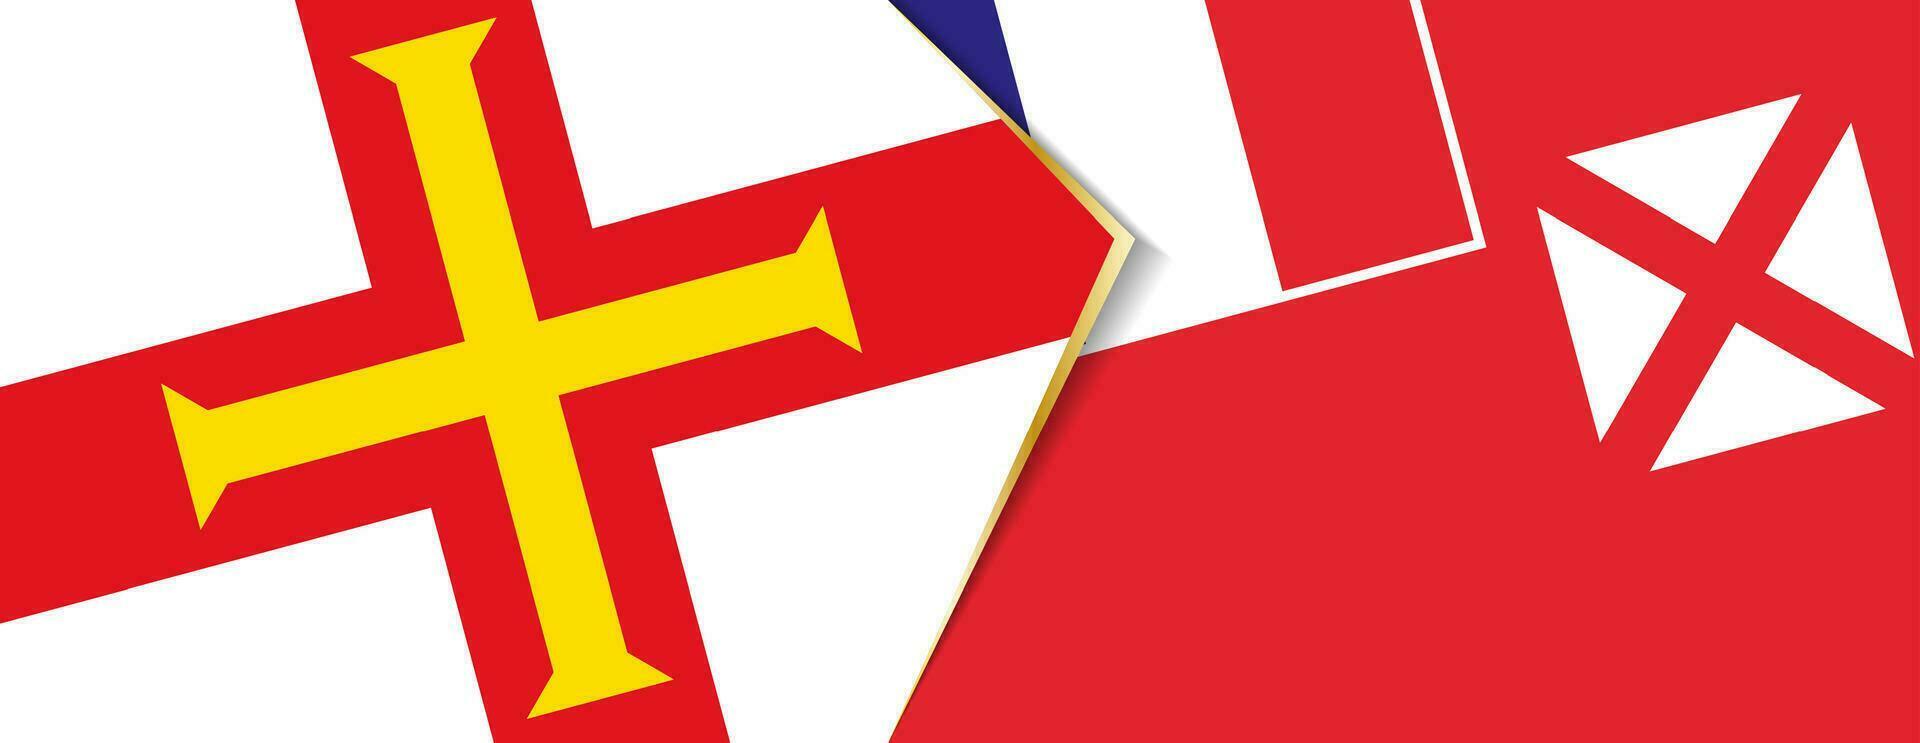 guernsey y Wallis y futuna banderas, dos vector banderas